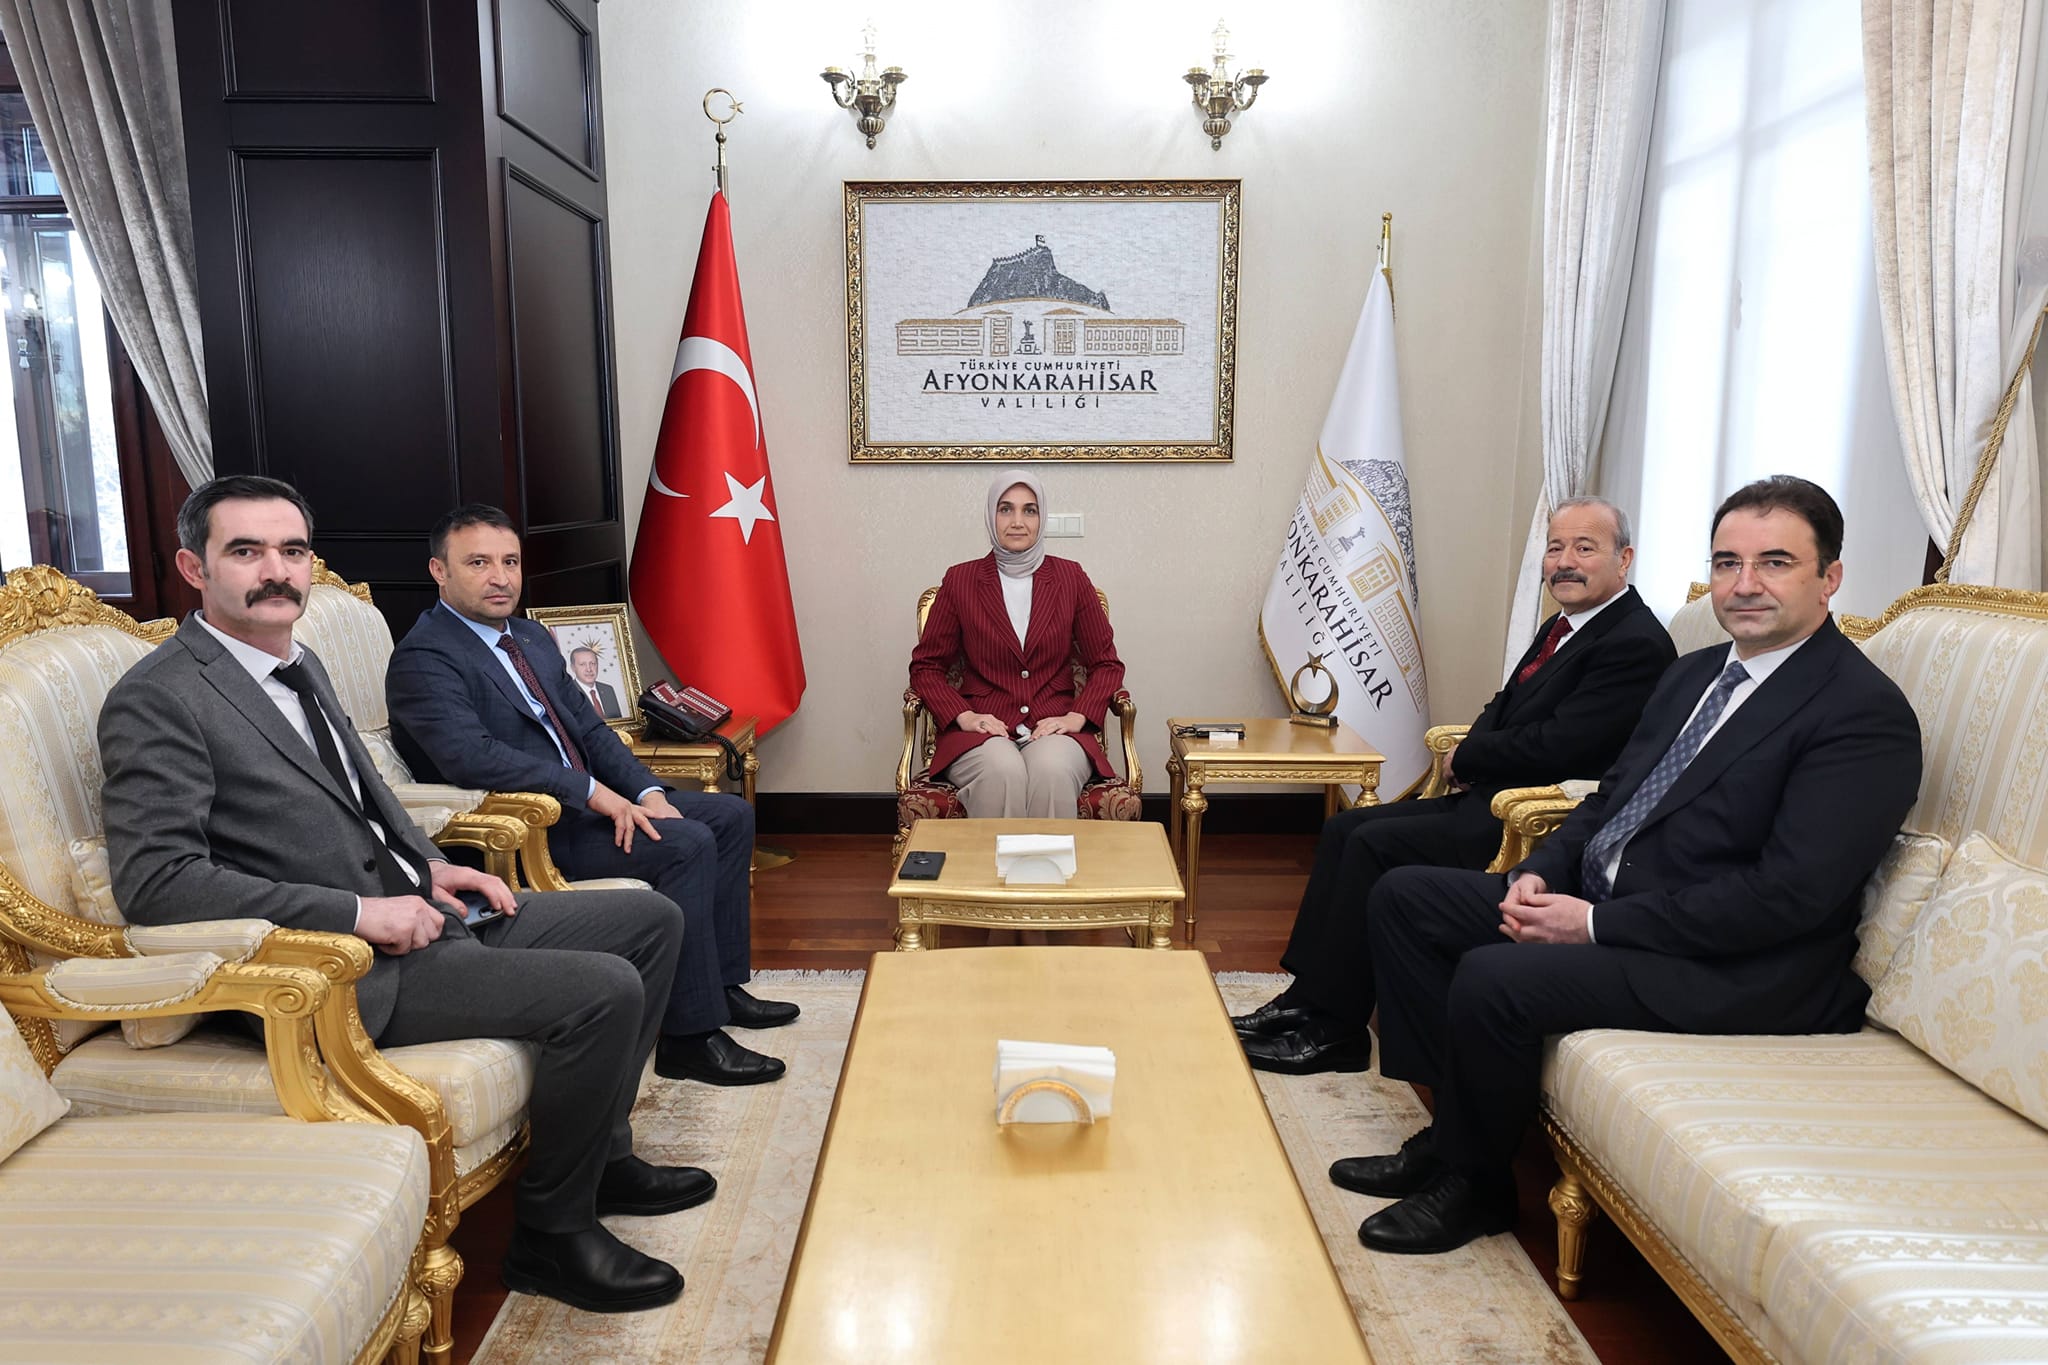 Afyonkarahisar Valisi, MHP heyetiyle önemli bir görüşme gerçekleştirdi.